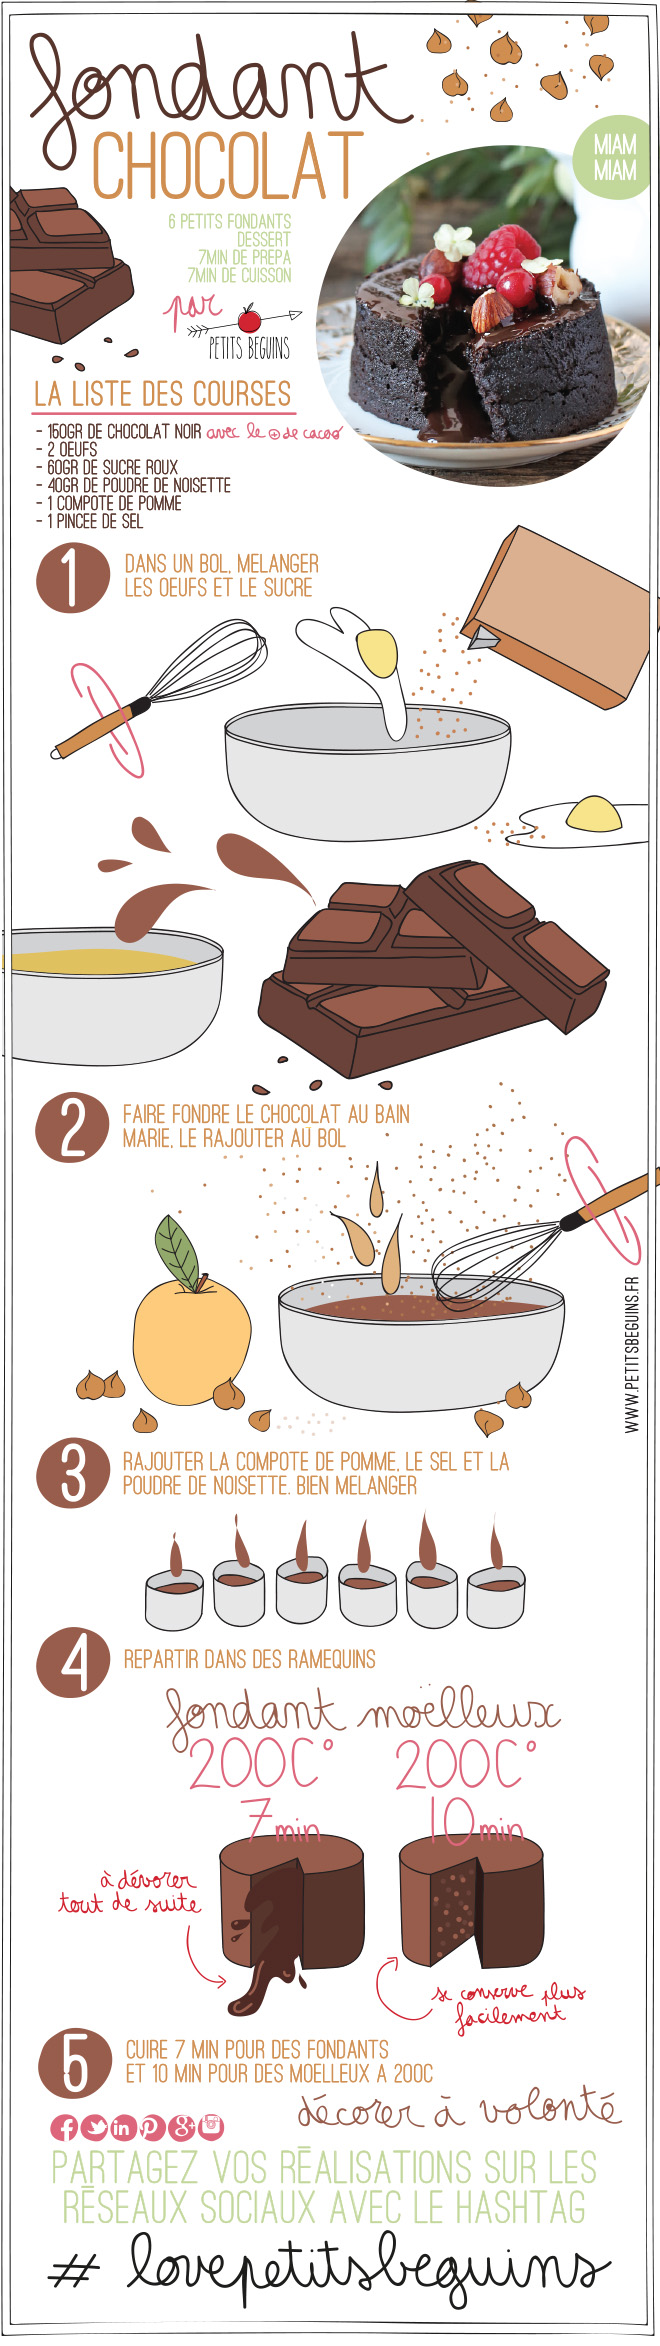 Fondant Chocolat Noisette - Sans gluten, sans lactose - Petits Béguins